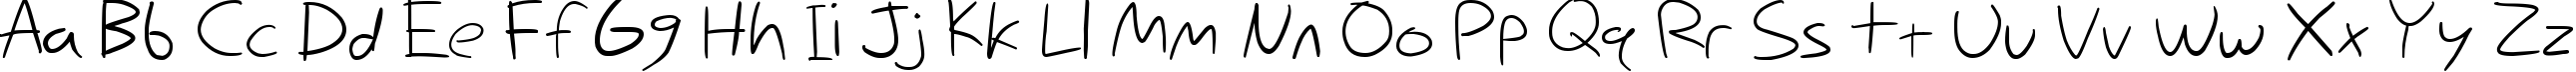 Пример написания английского алфавита шрифтом Nihilschiz Handwriting